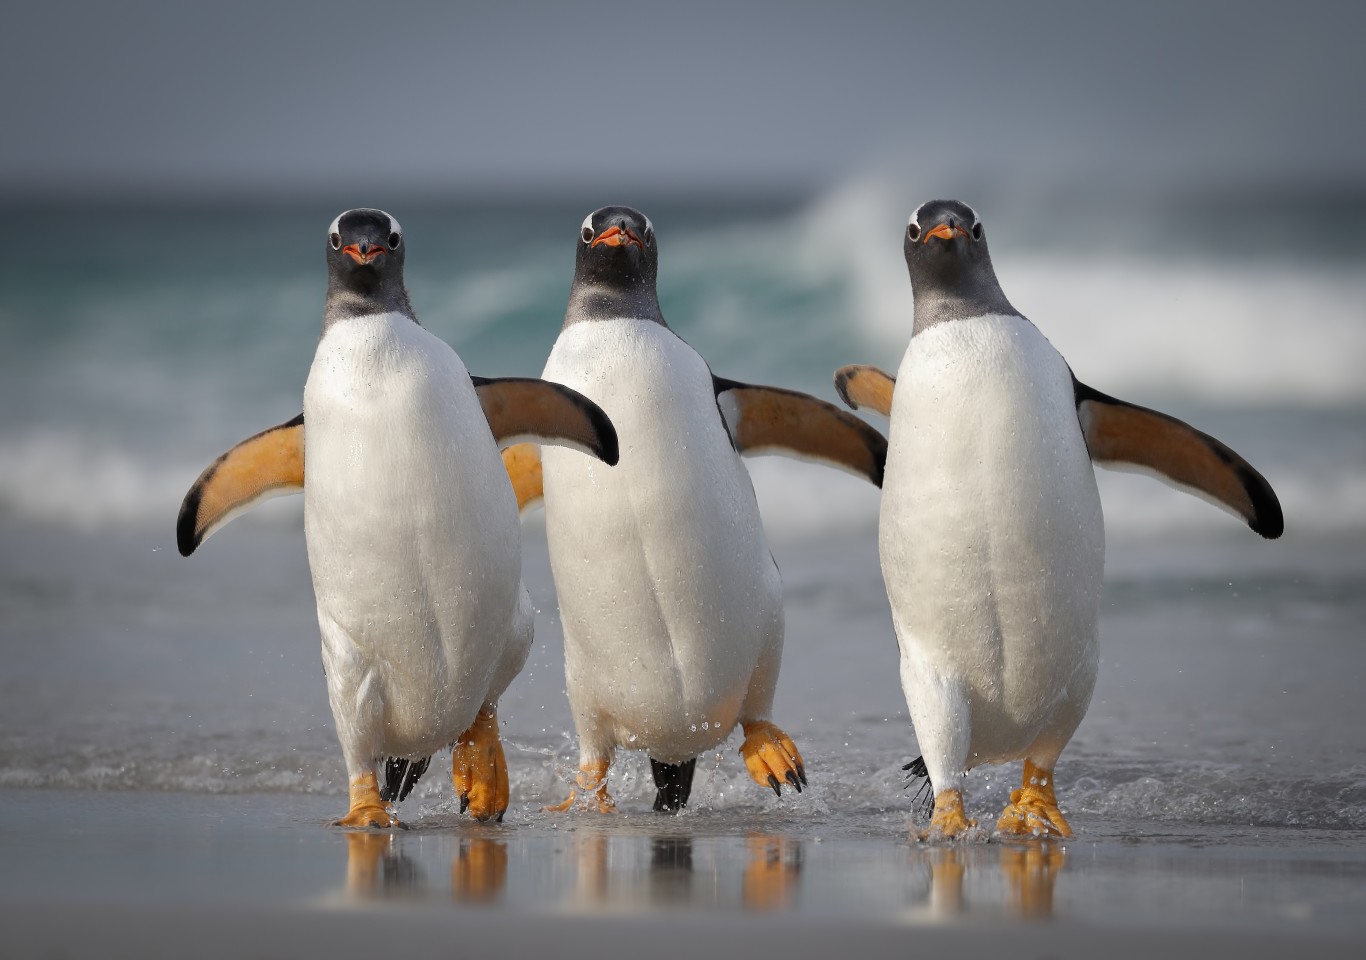 "Мы слишком сексуальны для этого пляжа". (Субантарктические пингвины на Фолклендских островах, Великобритания). Фото: © Joshua Galicki / Comedy Wildlife Photography Awards 2021